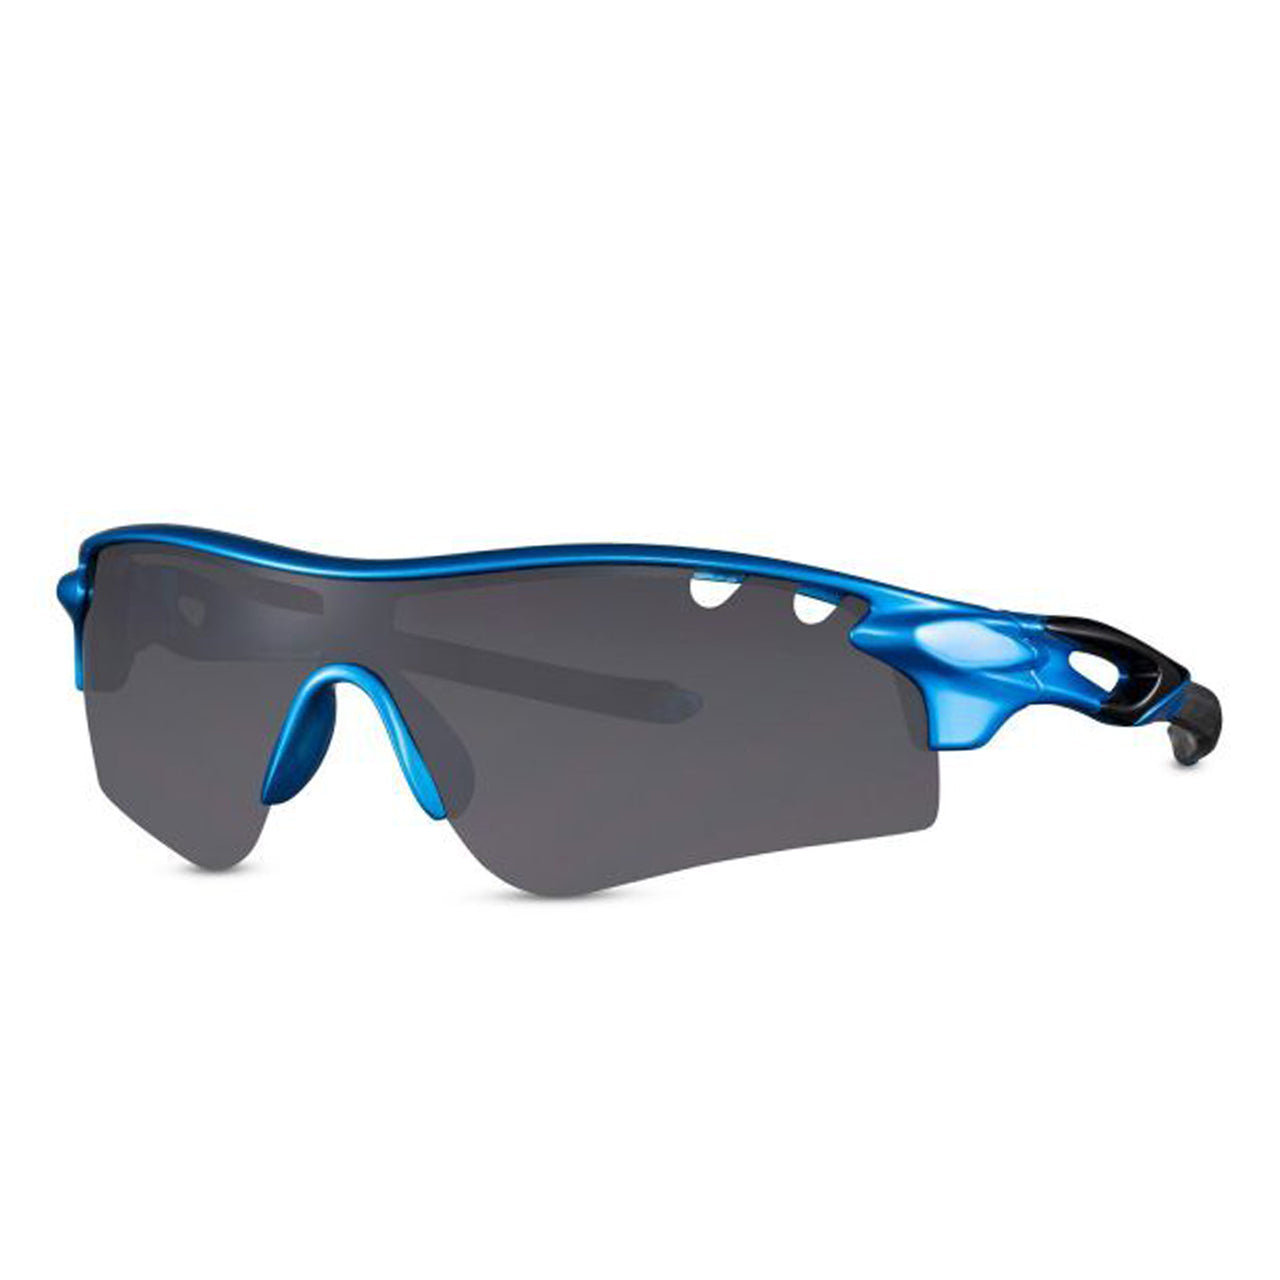 Snash - Sonnenbrille sportliche Optik